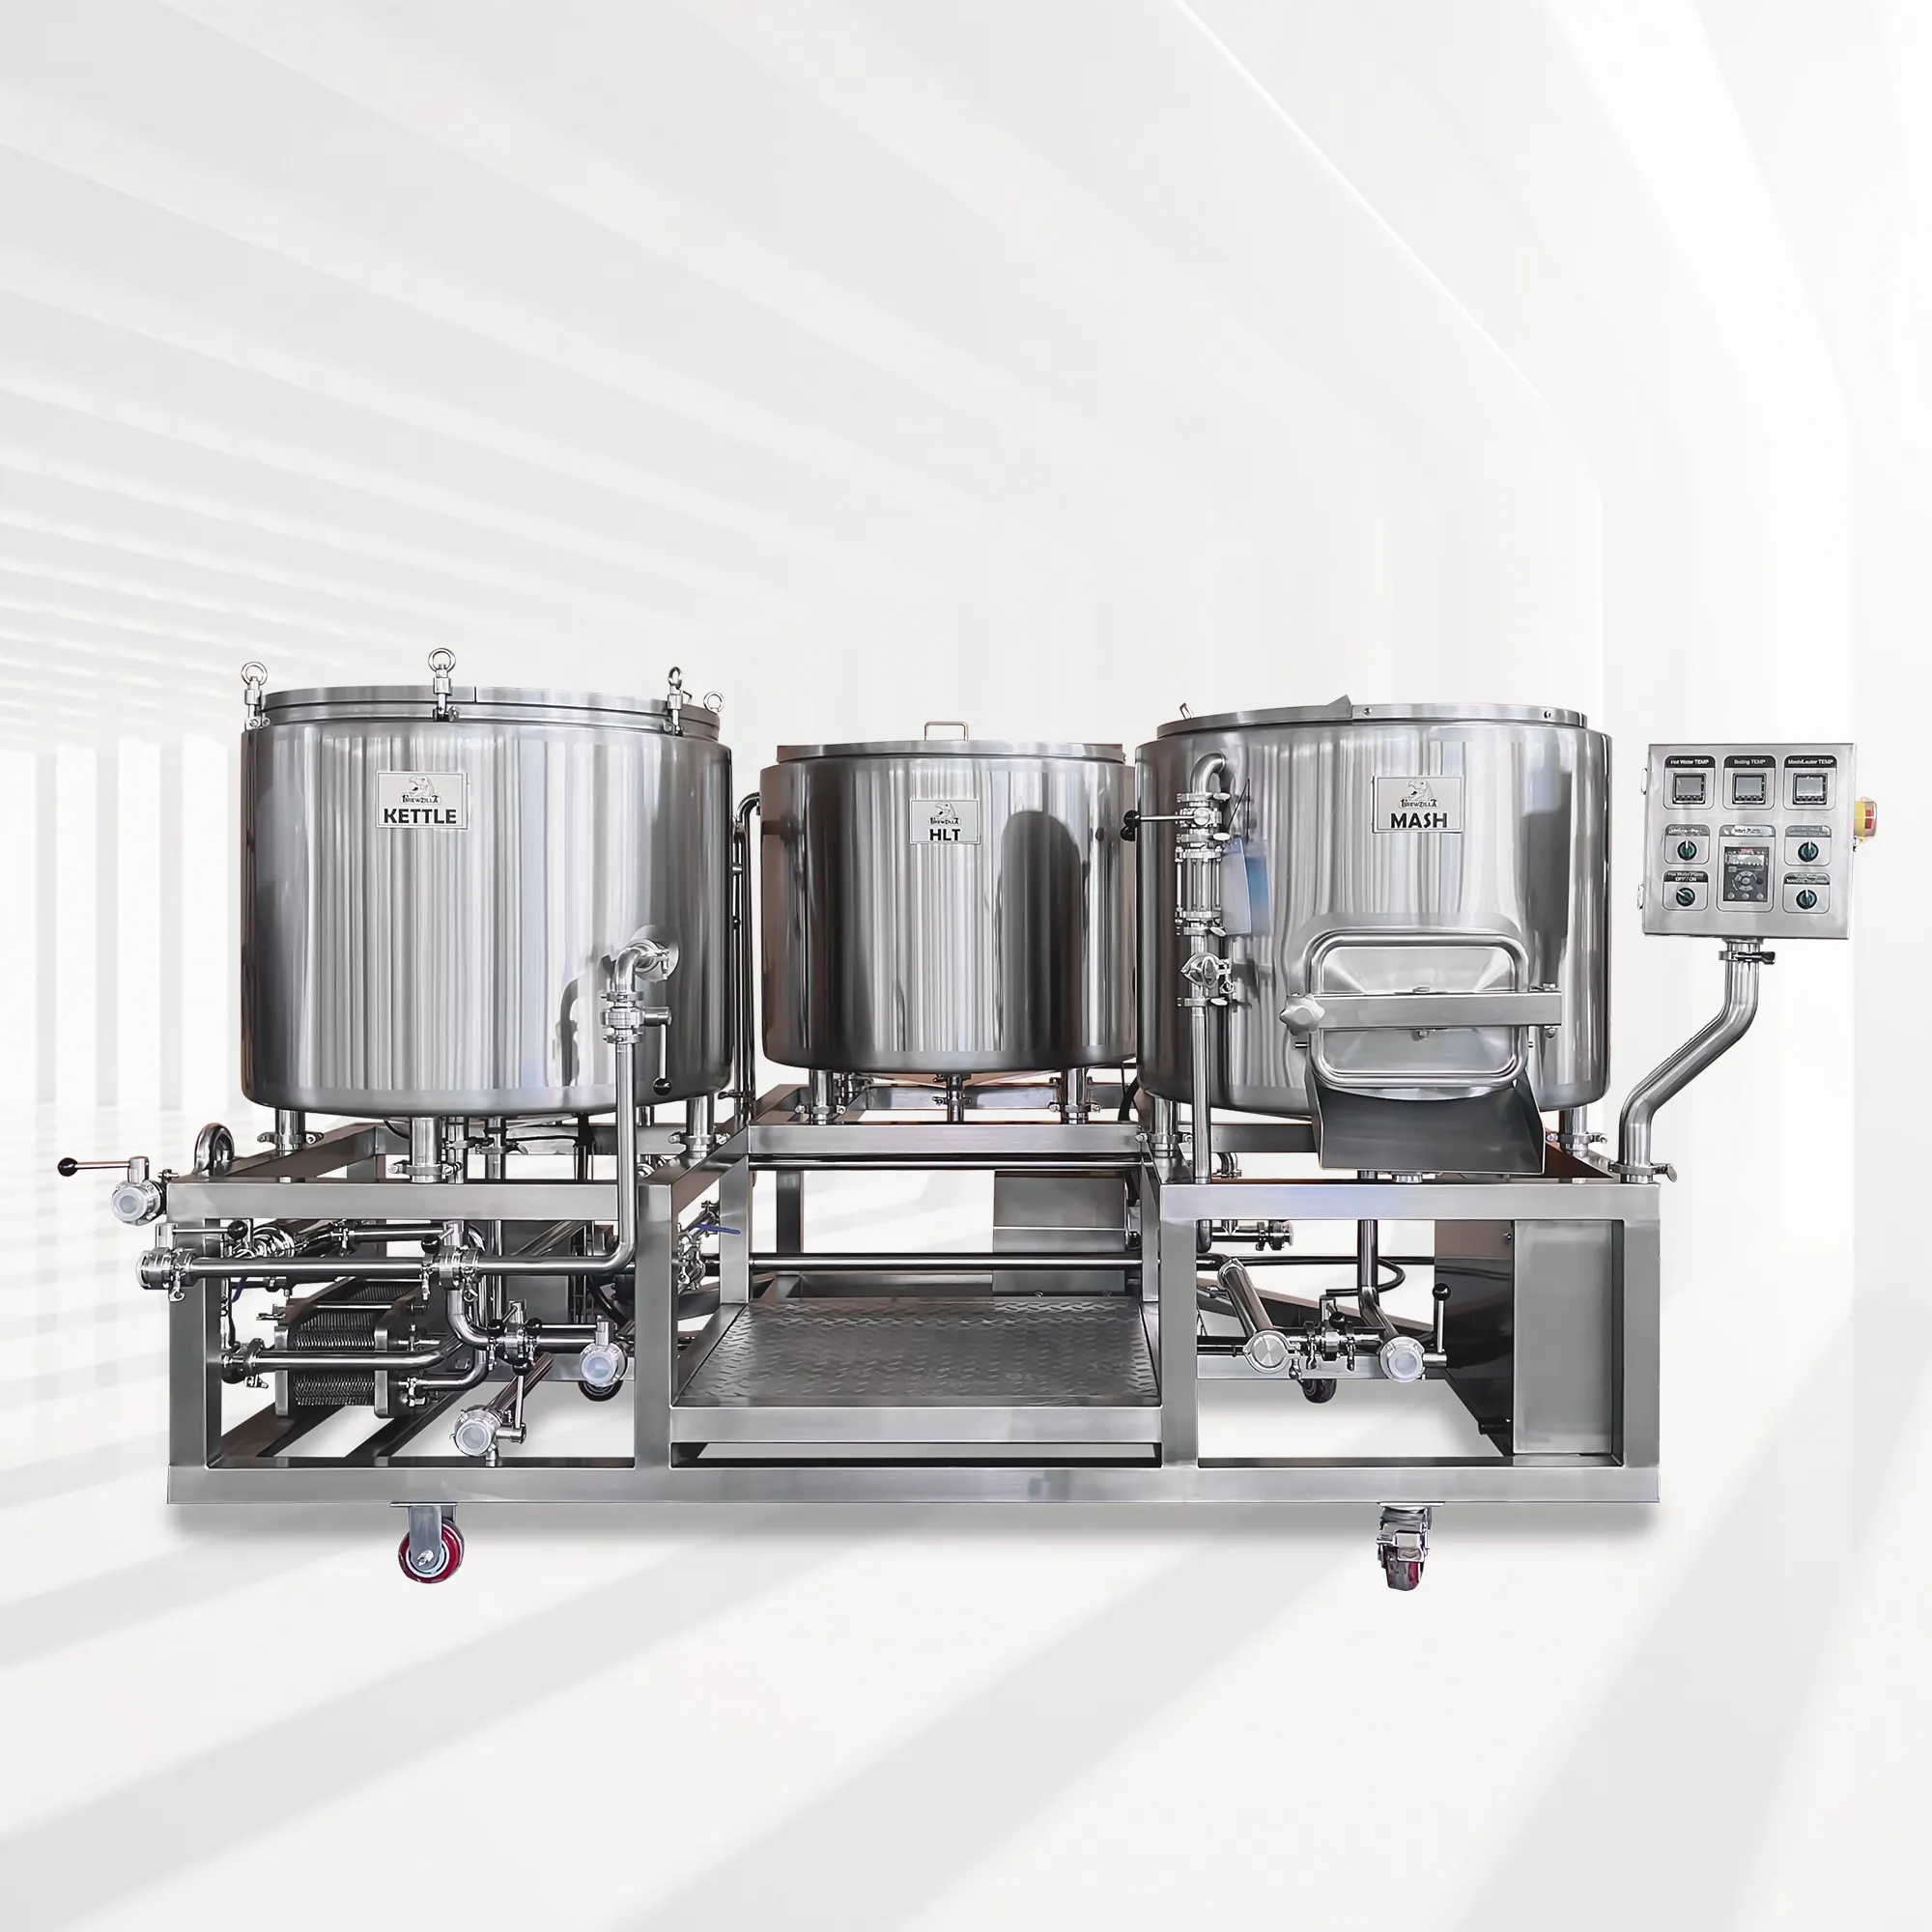 Sistema de elaboración de cerveza modelo piloto Nano, equipo de elaboración de cerveza, 1bbl, 2bbl, 3bbl, 4bbl, 5bbl